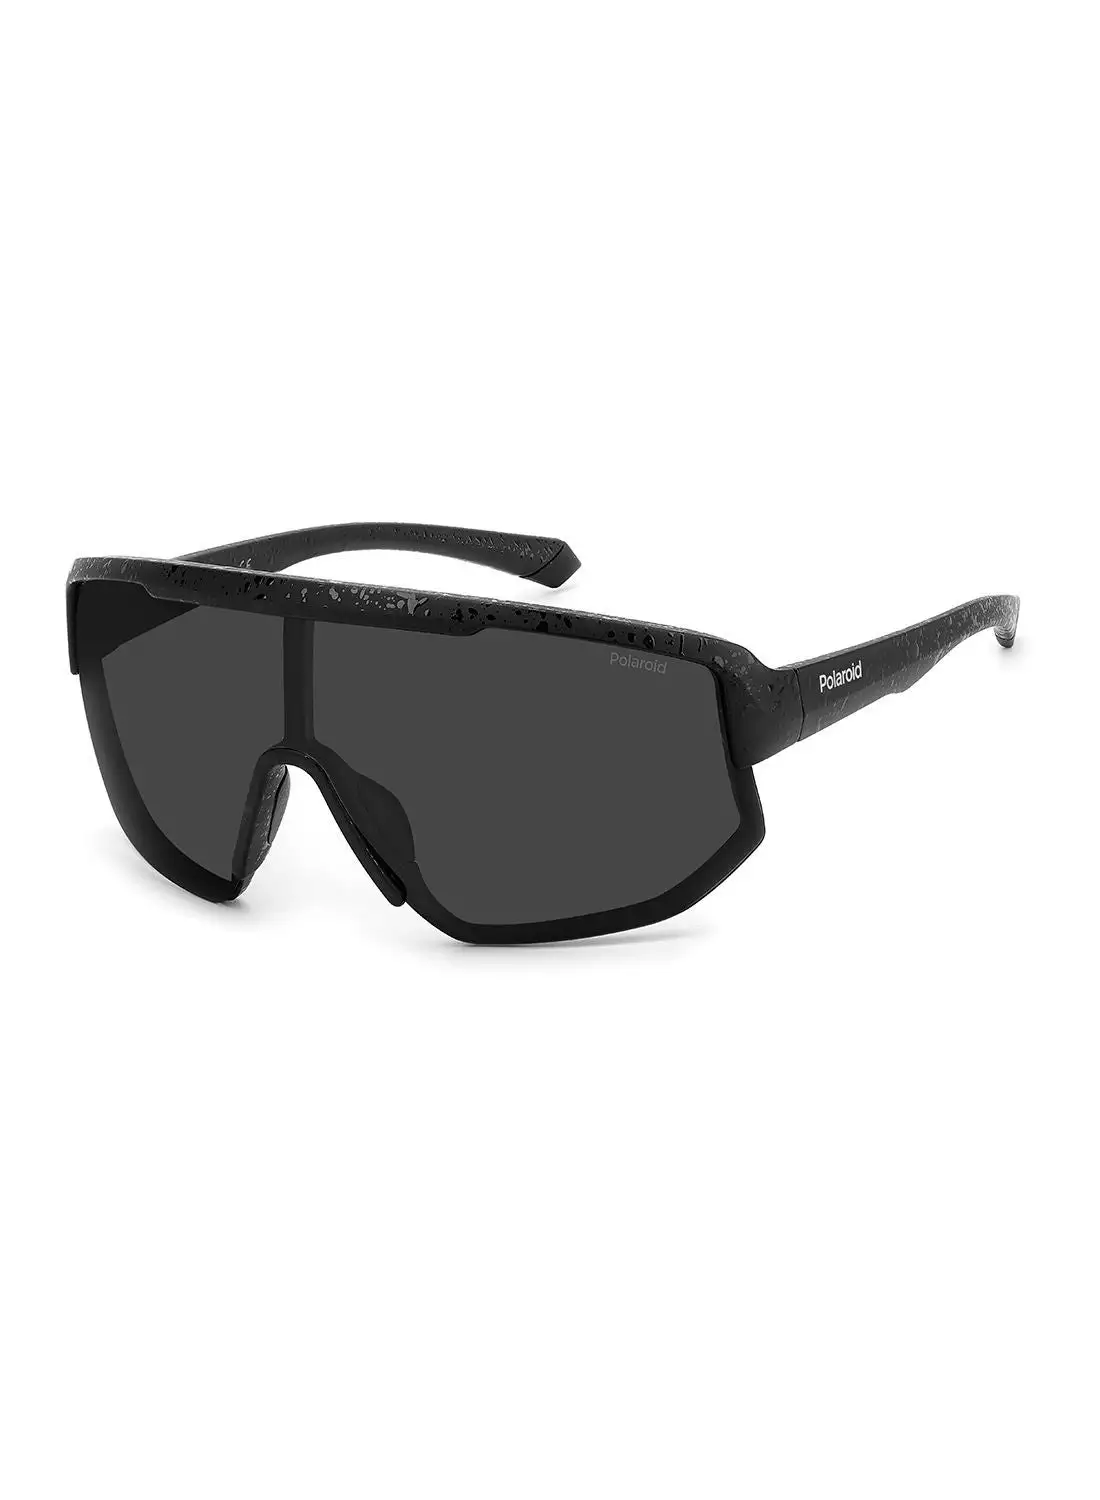 بولارويد نظارة شمسية للجنسين للحماية من الأشعة فوق البنفسجية - Pld 7047/S Mtt Black 99 - مقاس العدسة: 99 ملم